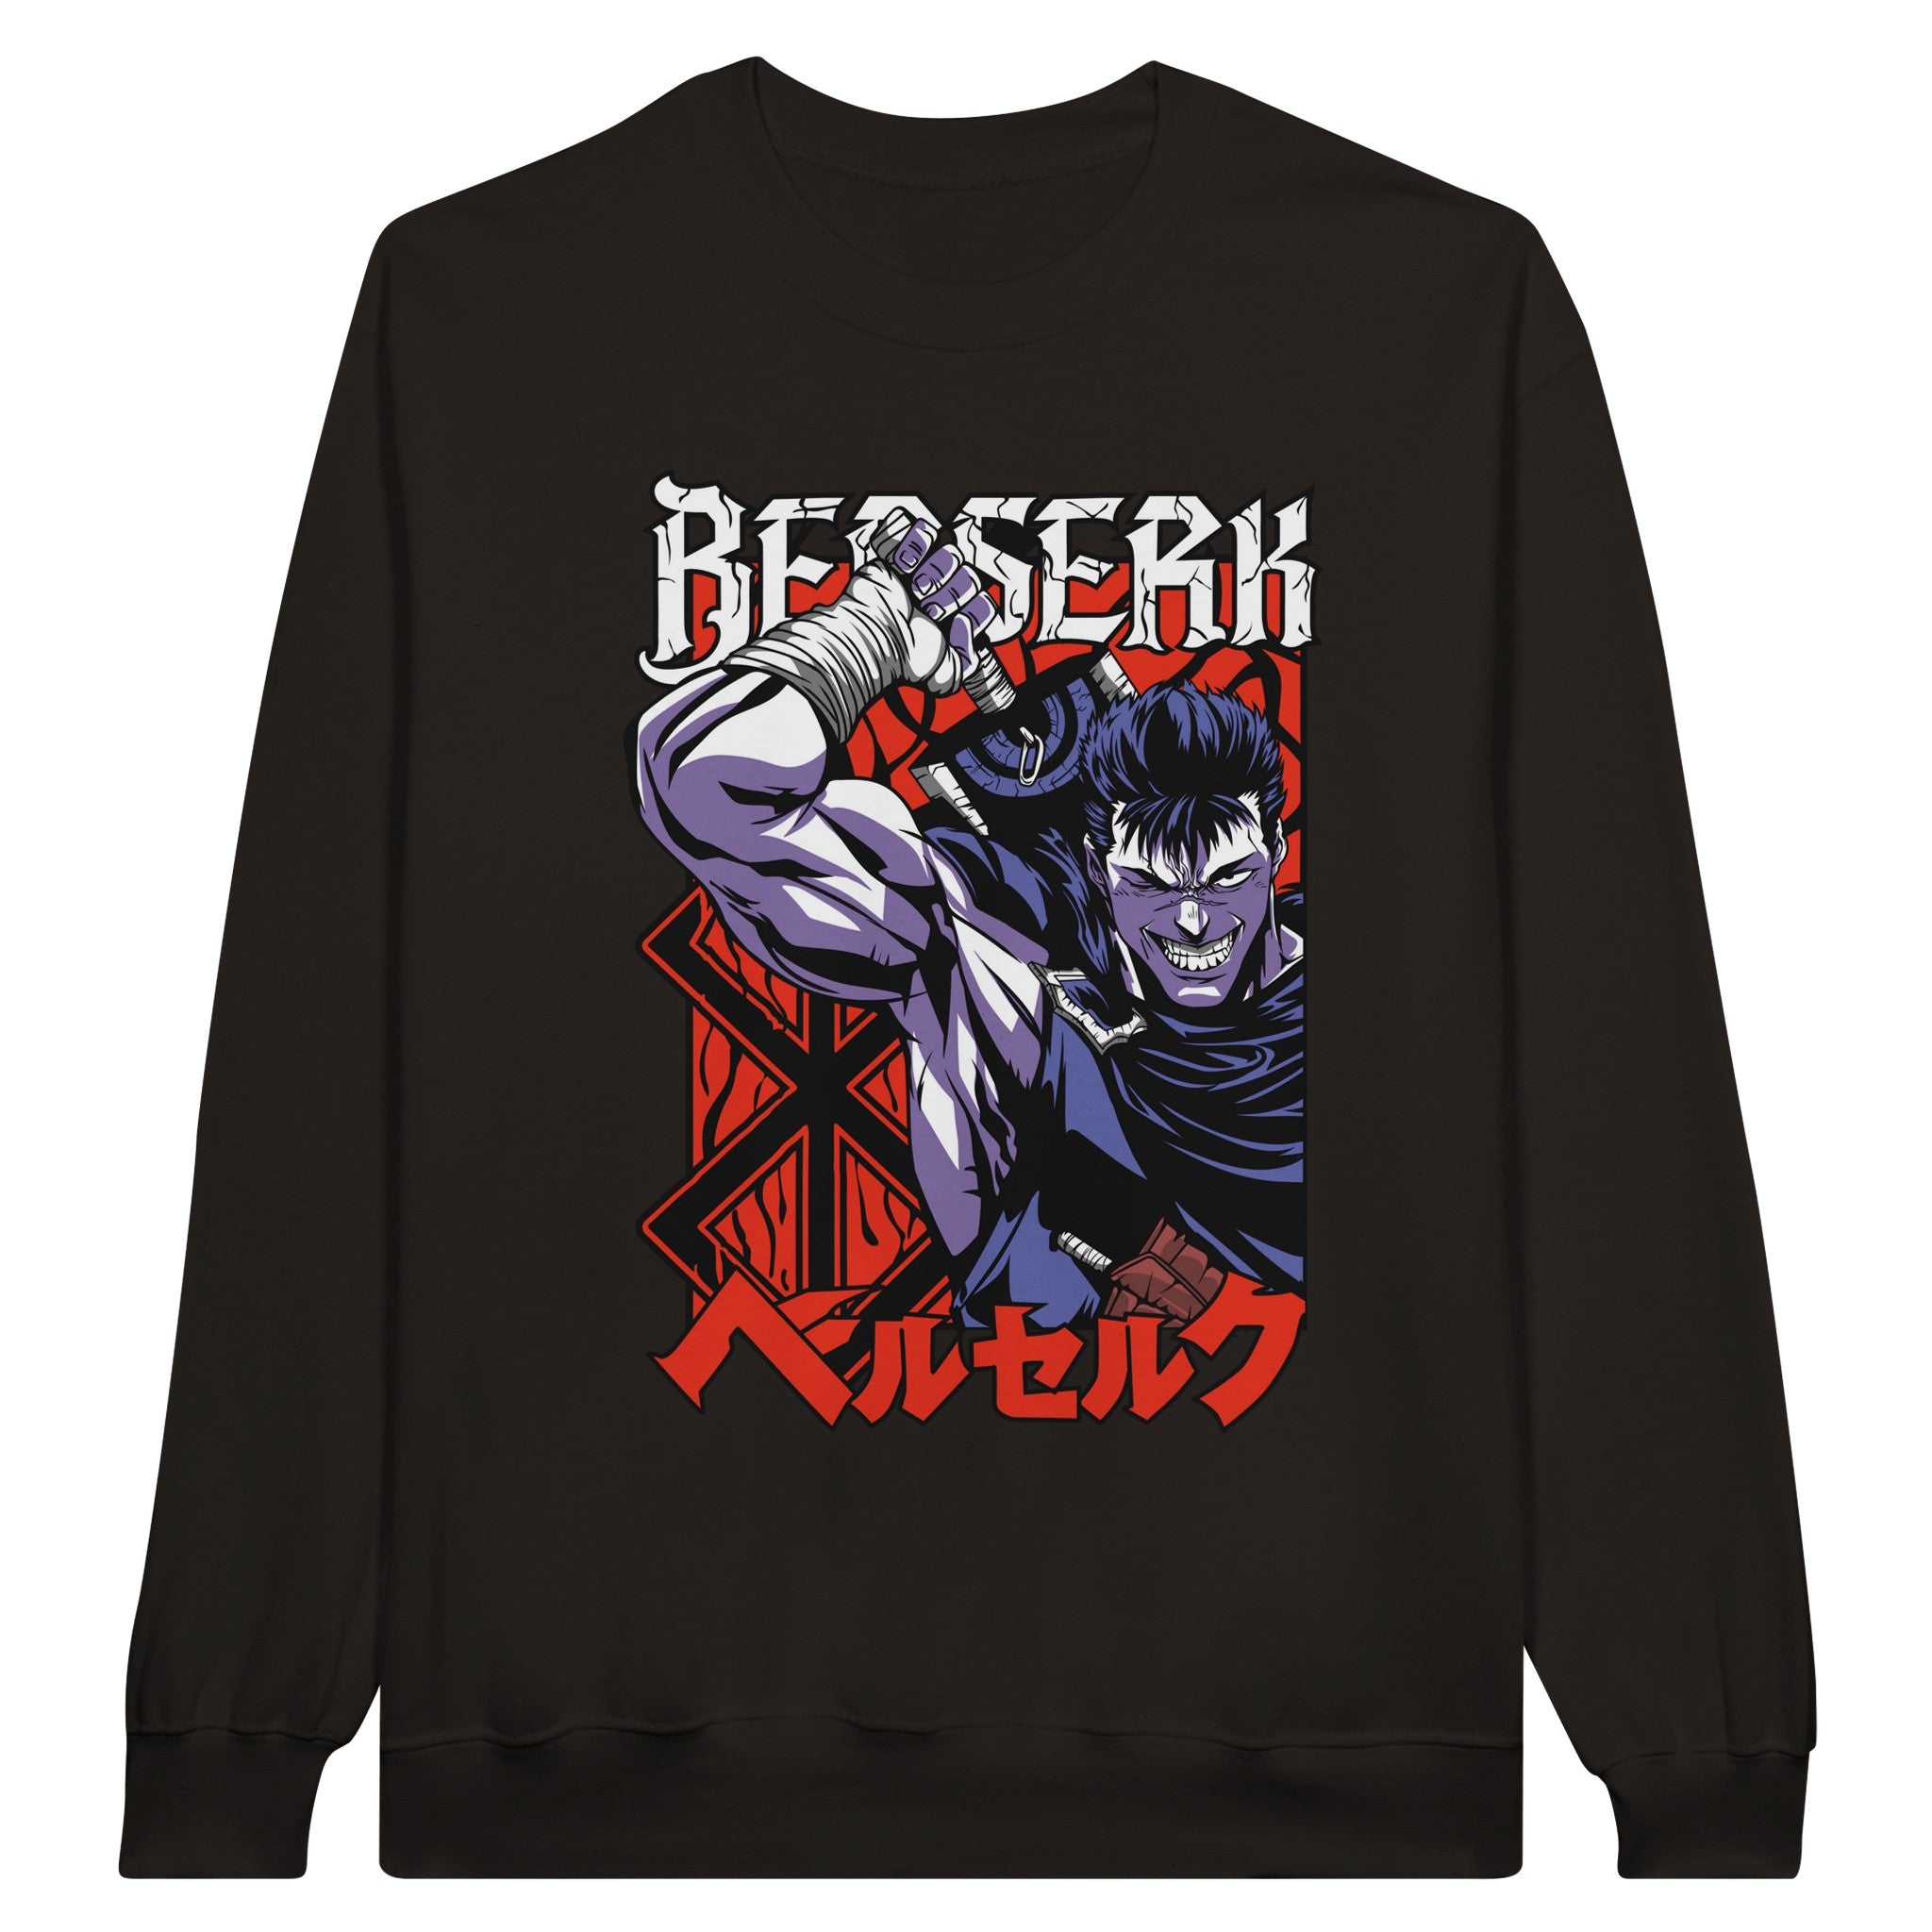 shop and buy berserk anime clothing guts sweatshirt/longsleeve/jumper